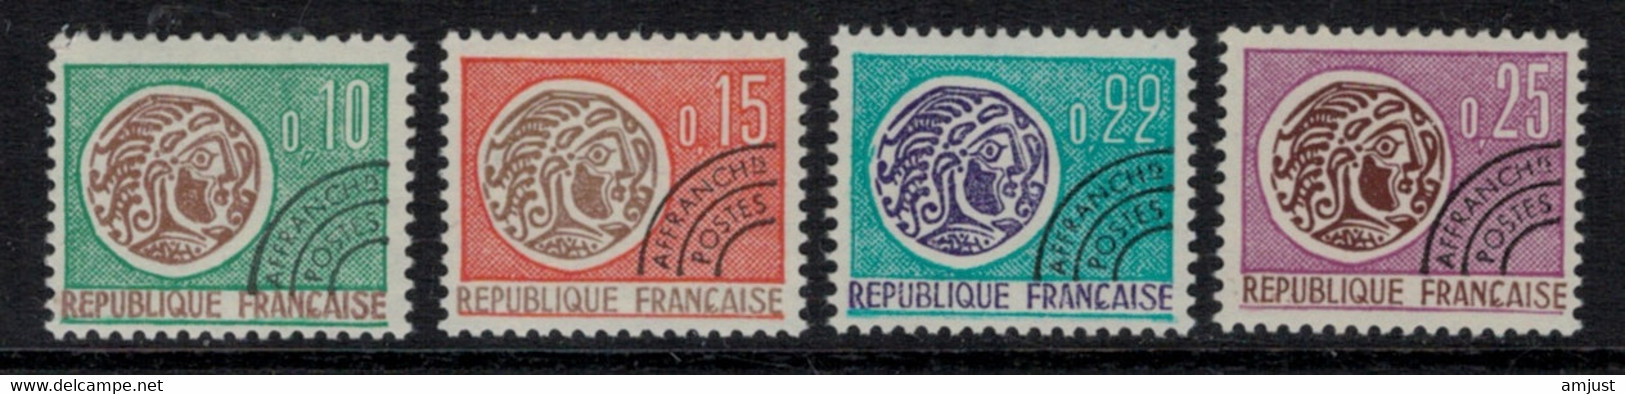 France // Préoblitérés // 1964 // Série Timbres Préoblitérés Neufs** MNH No. Y&T 123 à 126 (Monnaie Gauloise) - 1964-1988